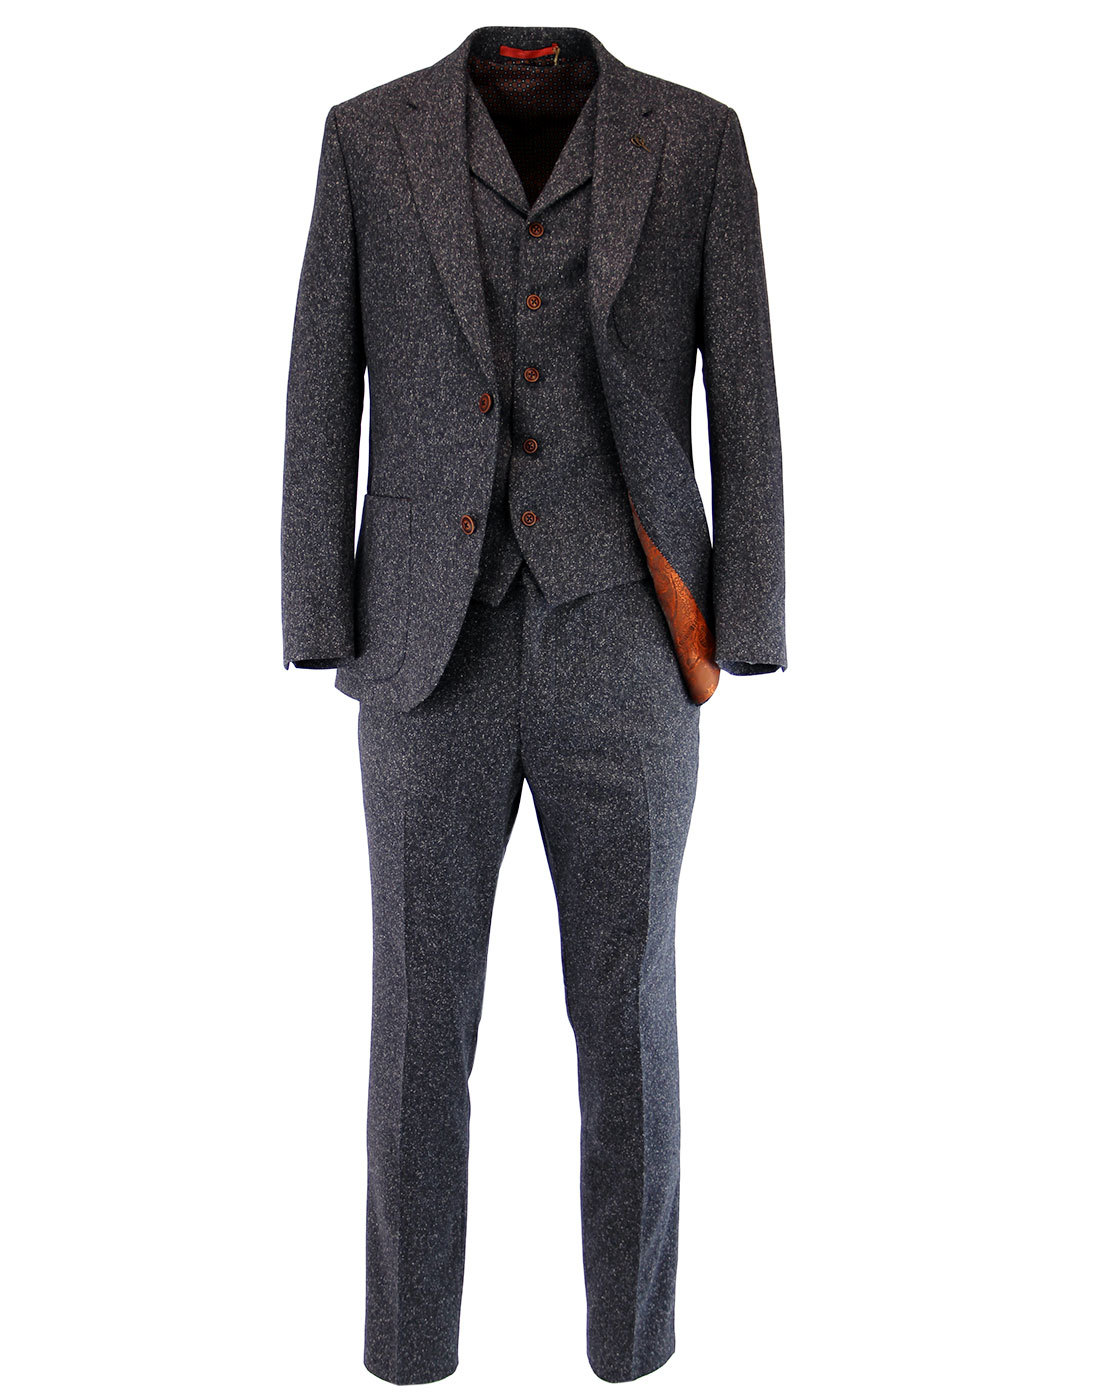 GIBSON LONDON Retro 60s Mod Denim Donegal Suit